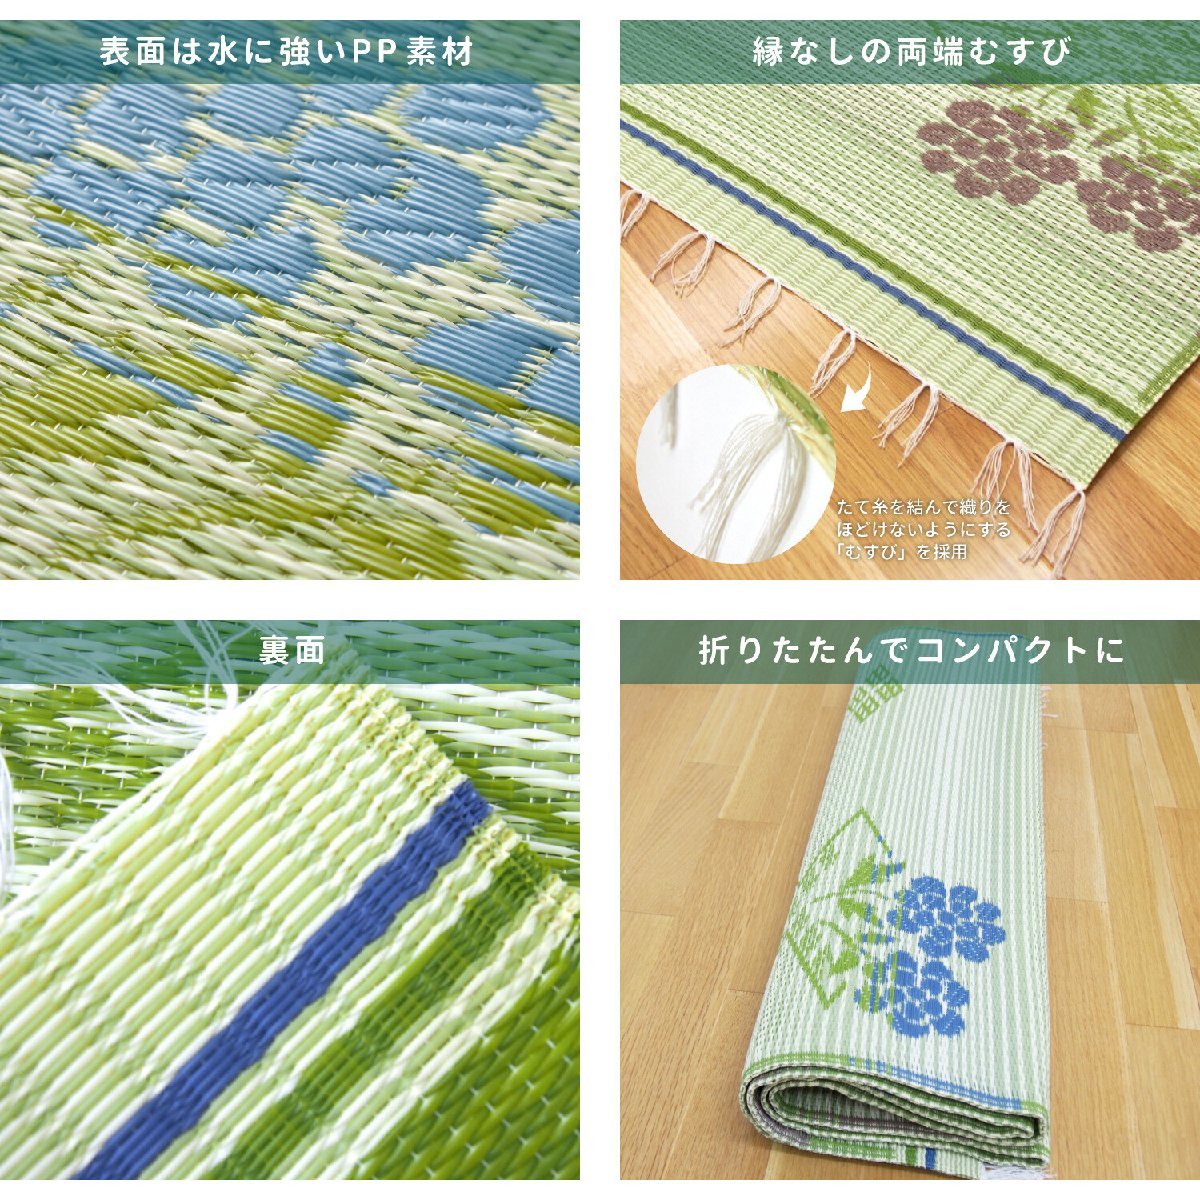 [ Япония атопия ассоциация рекомендация товар ]PP рисунок сверху кровать промывание в воде OK сделано в Японии [#110msbi] цветочный принт мир вкус Honma 6.( примерно 286×382cm)(.. способ цветок ..)